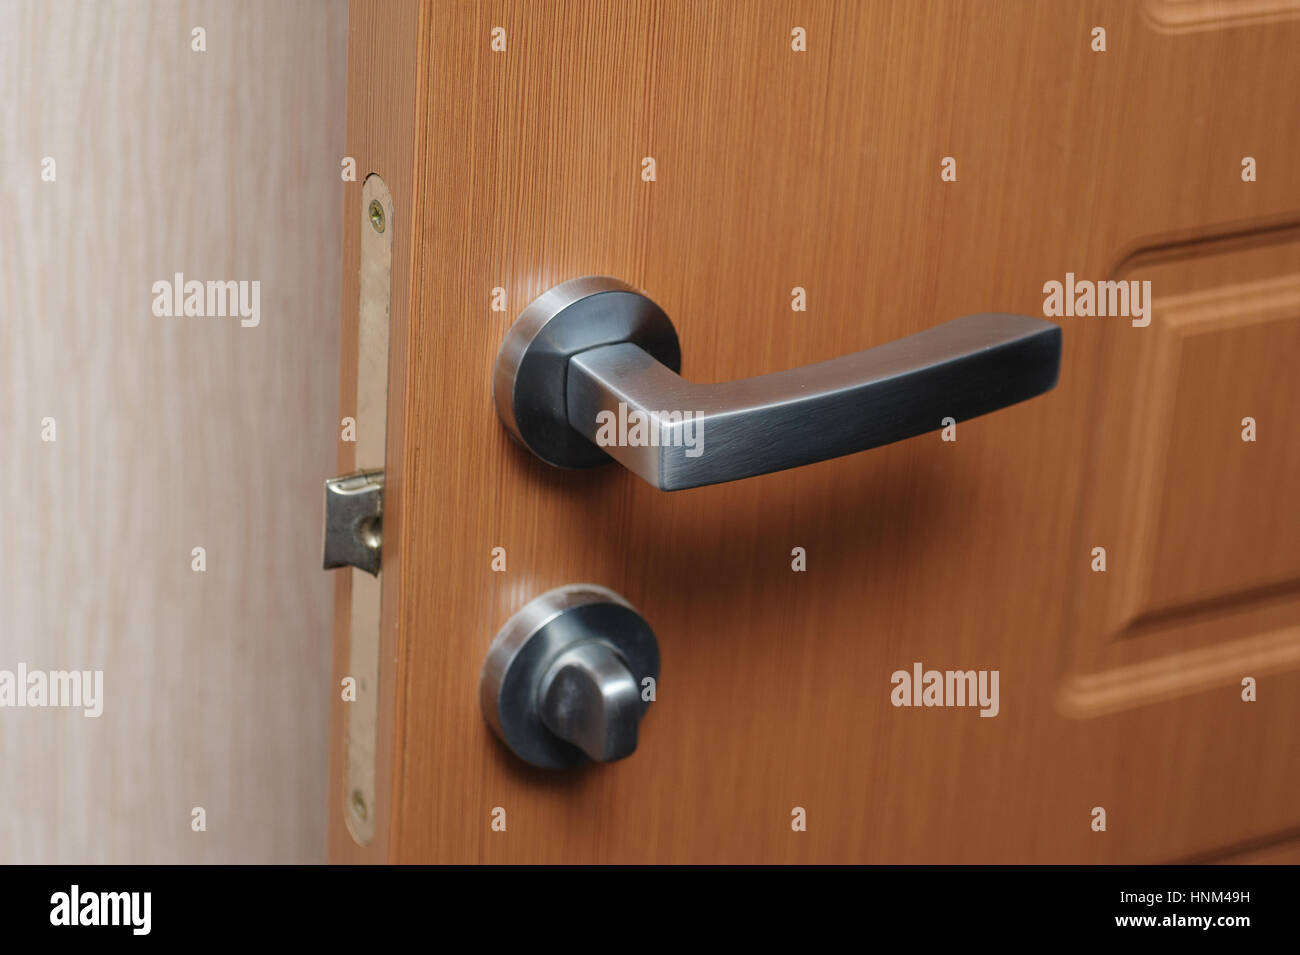 metal door handle. expensive furniture Stock Photo